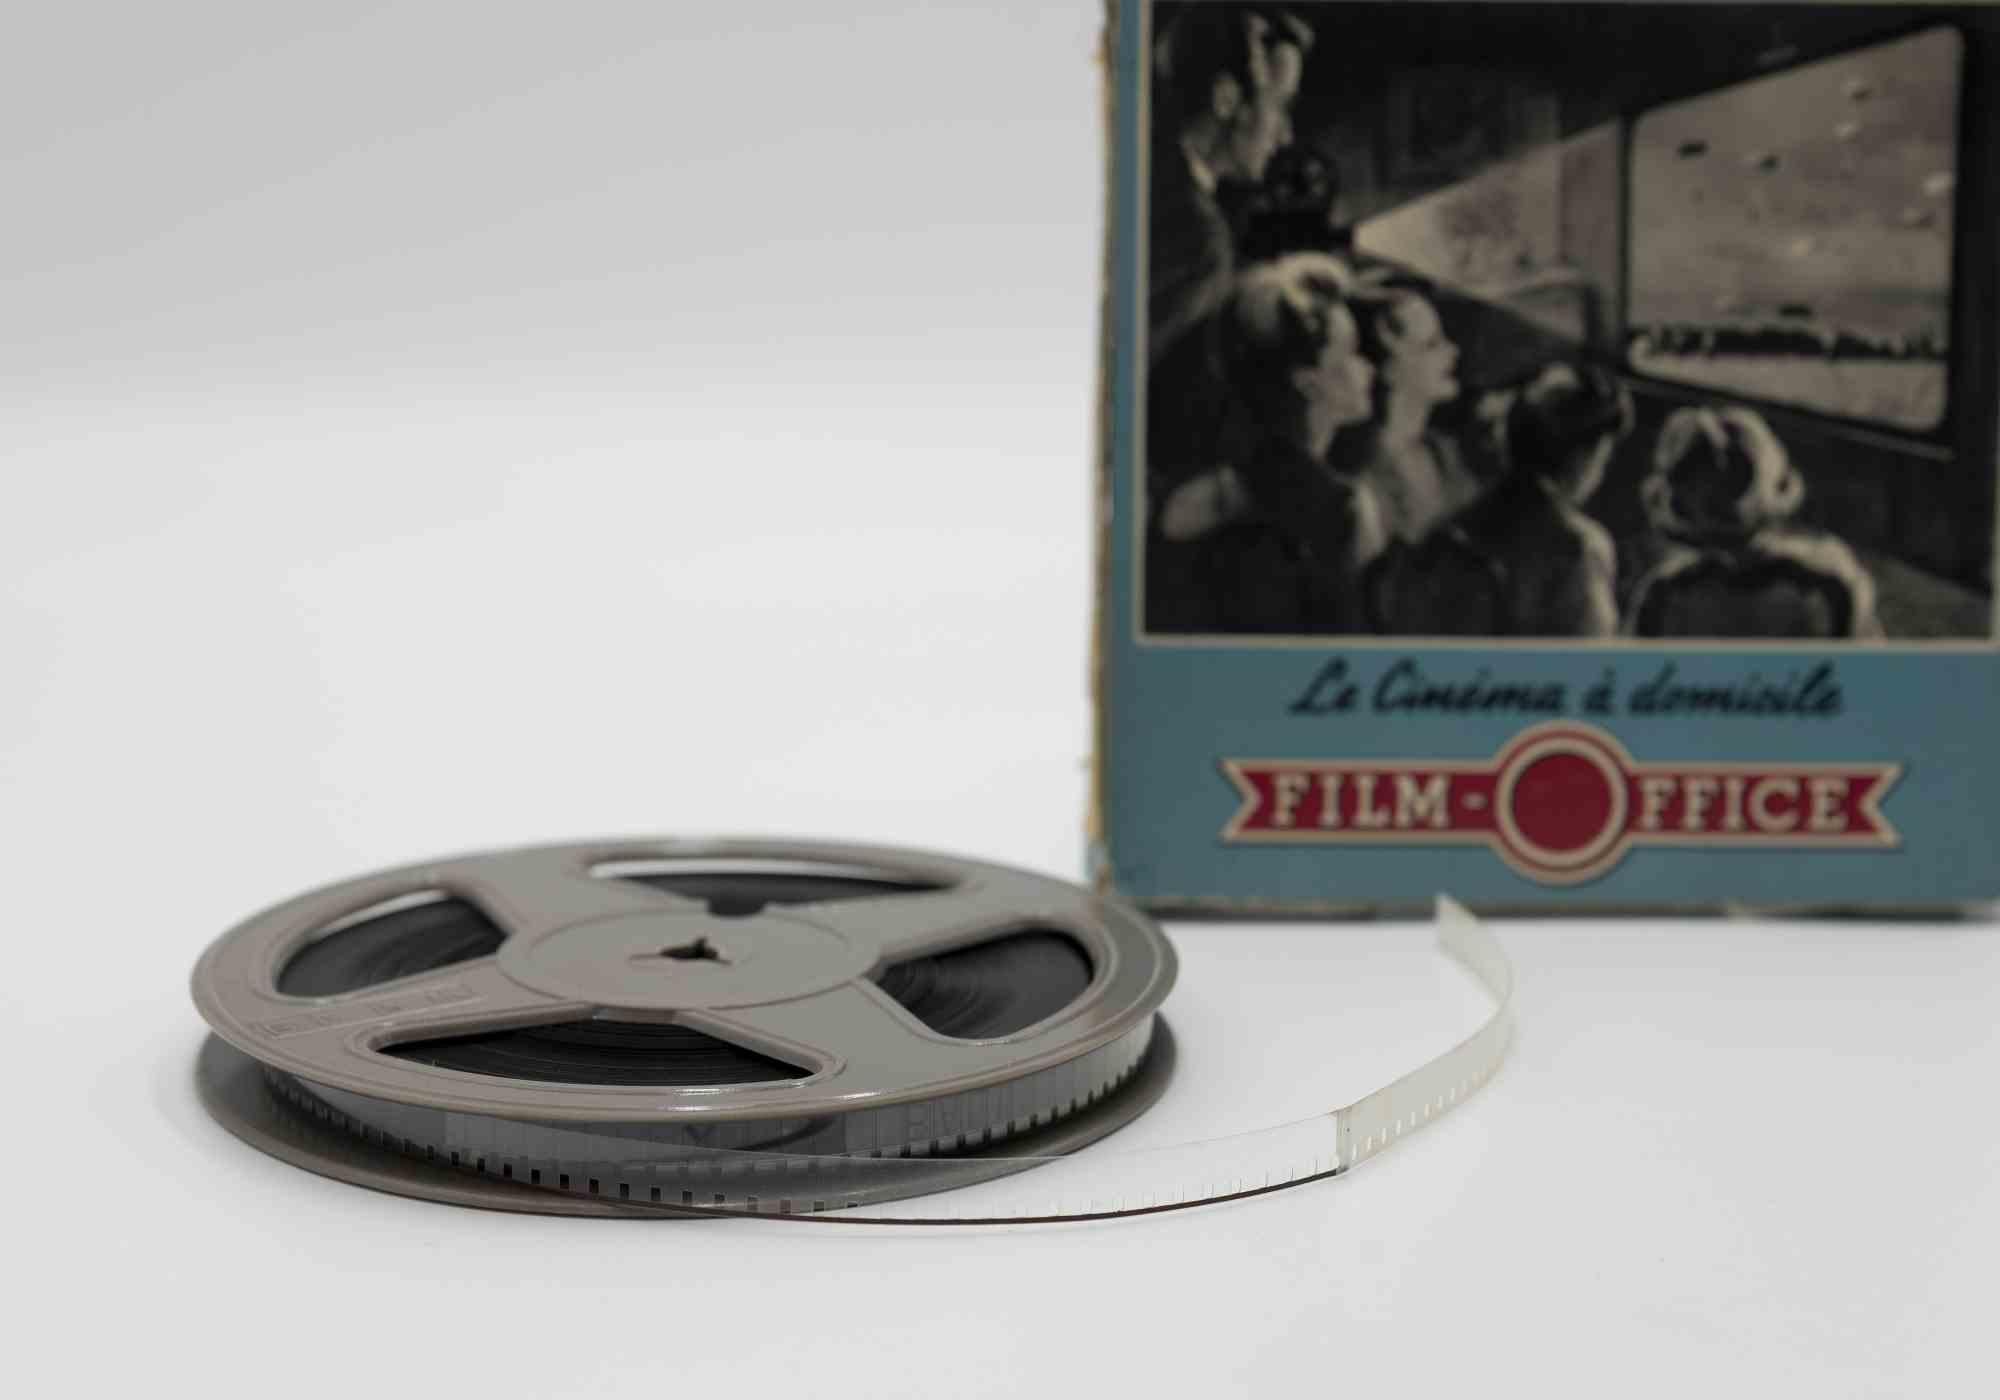 Le Cinèma à domicile, Film Office ist ein Originalfilm aus den 1960er Jahren.

Sie enthält die Originalverpackung.

16 mm.

Gute Bedingungen. 